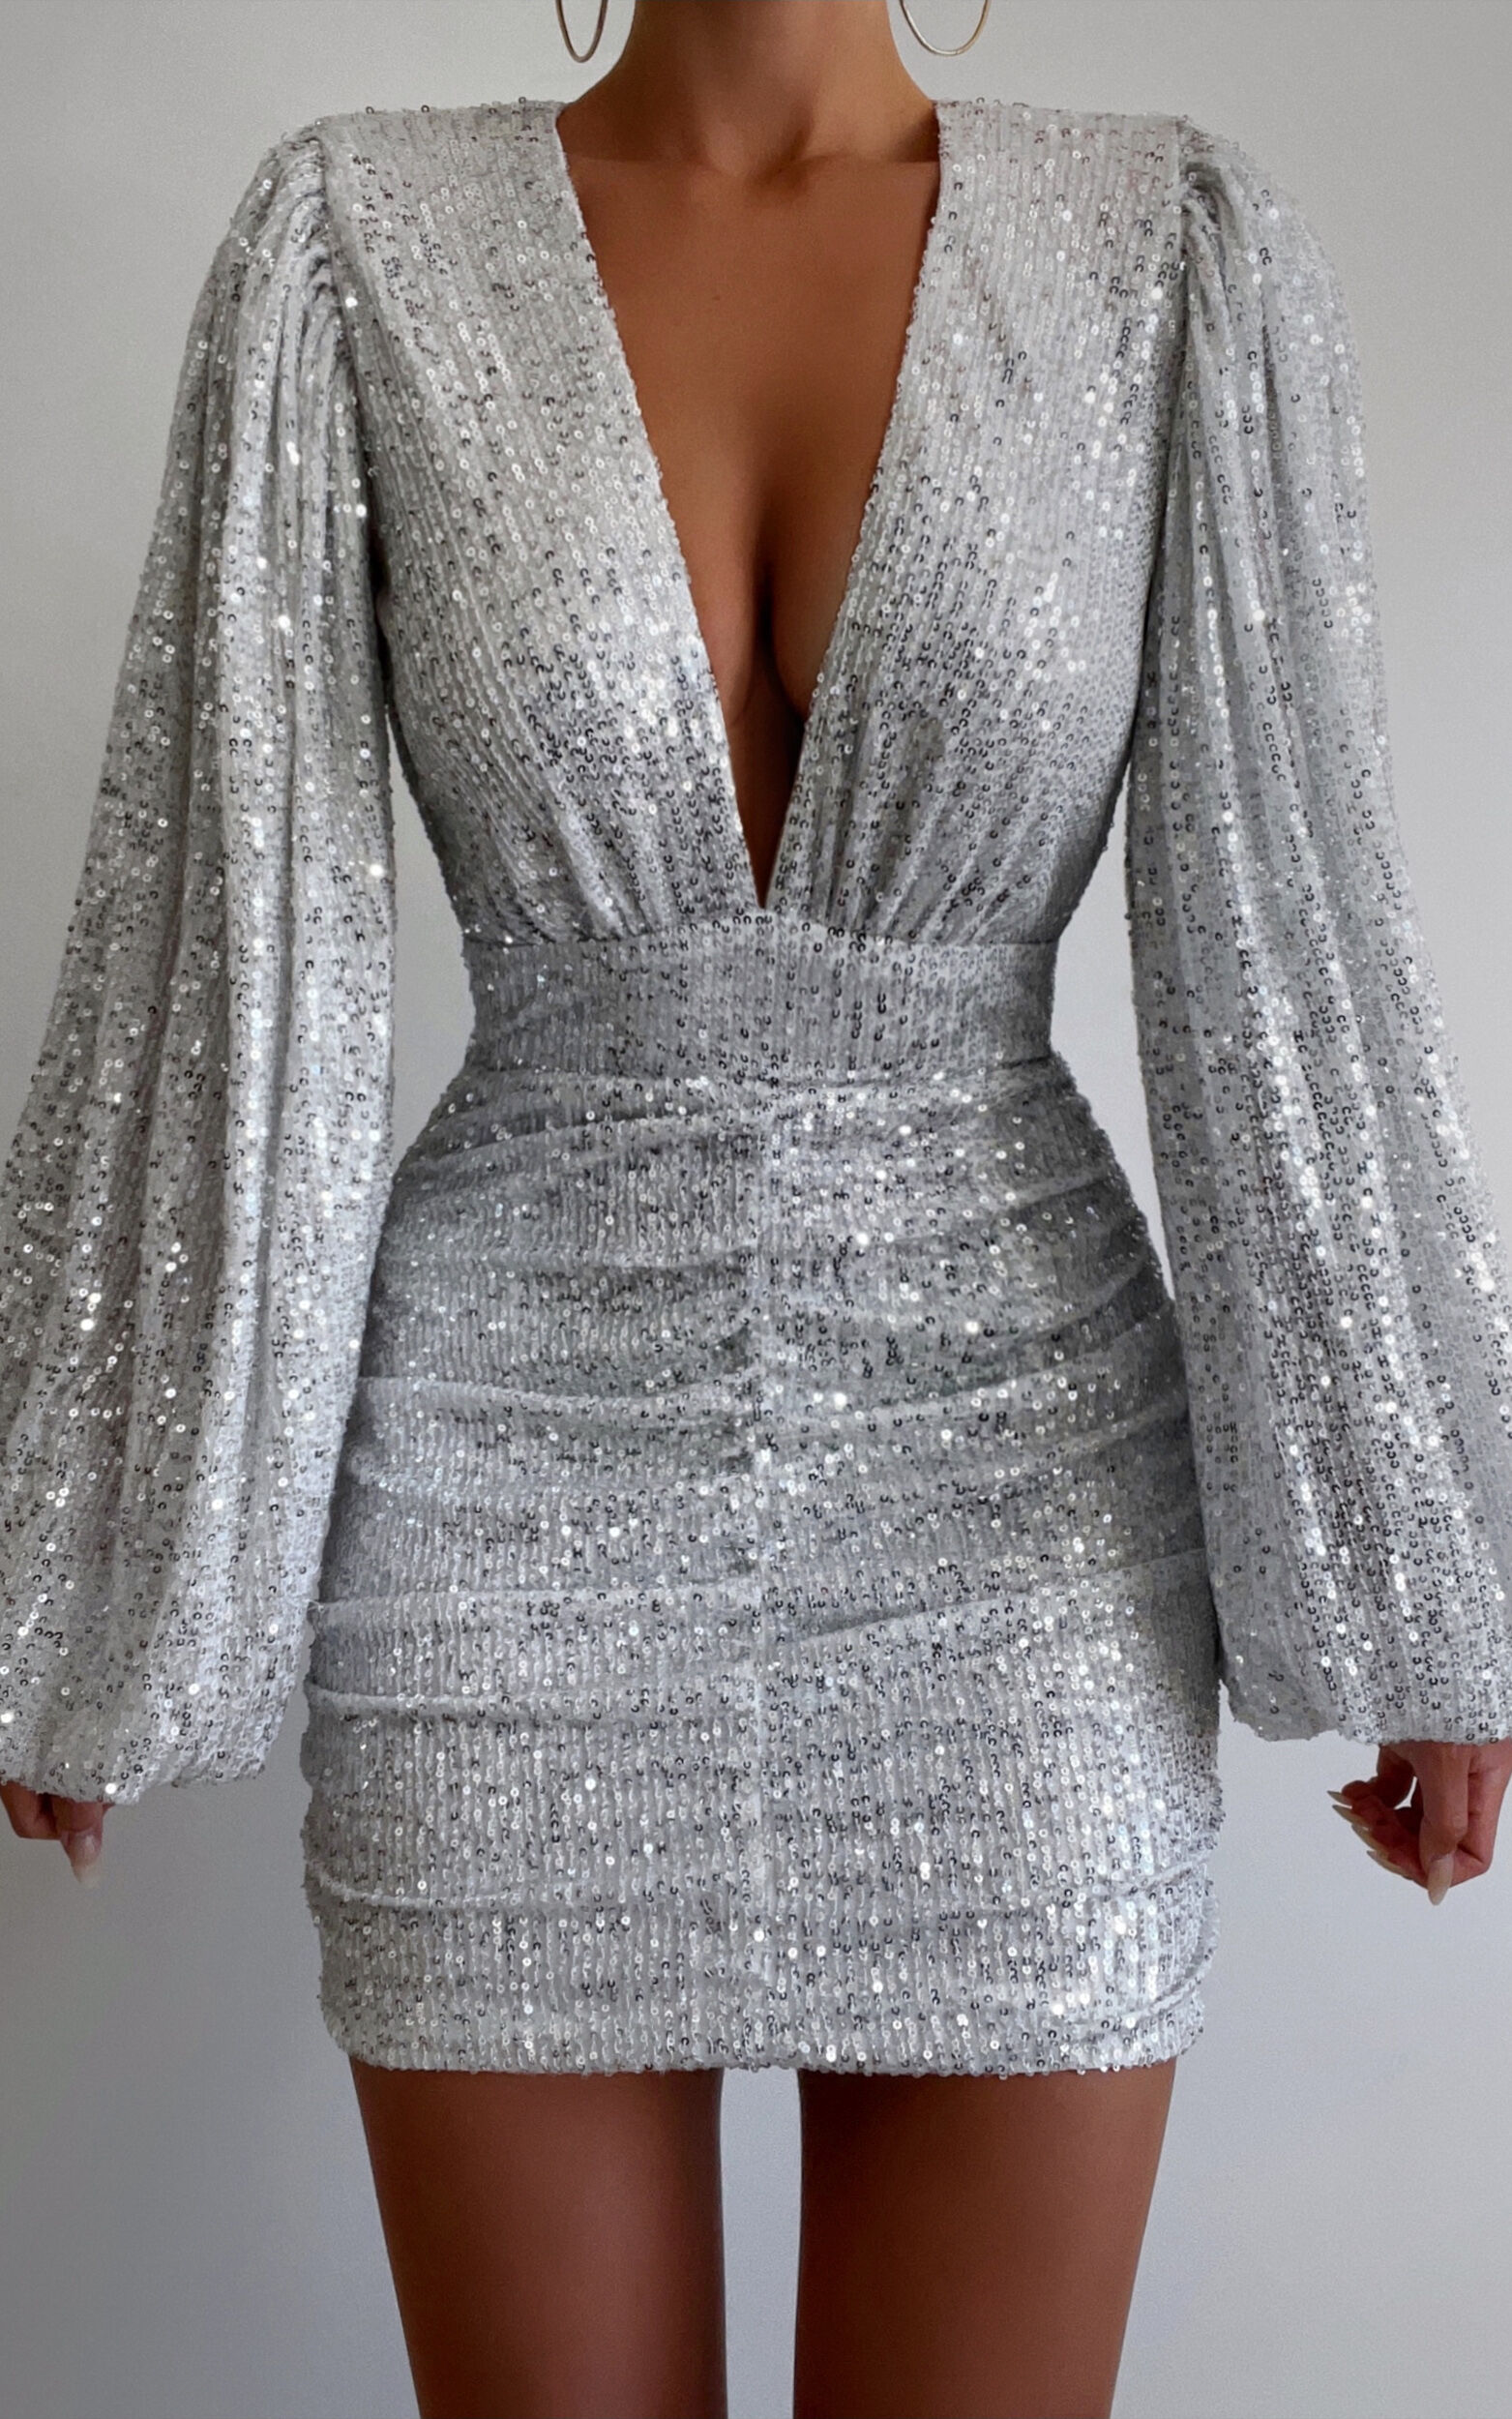 Short silver sequin dress